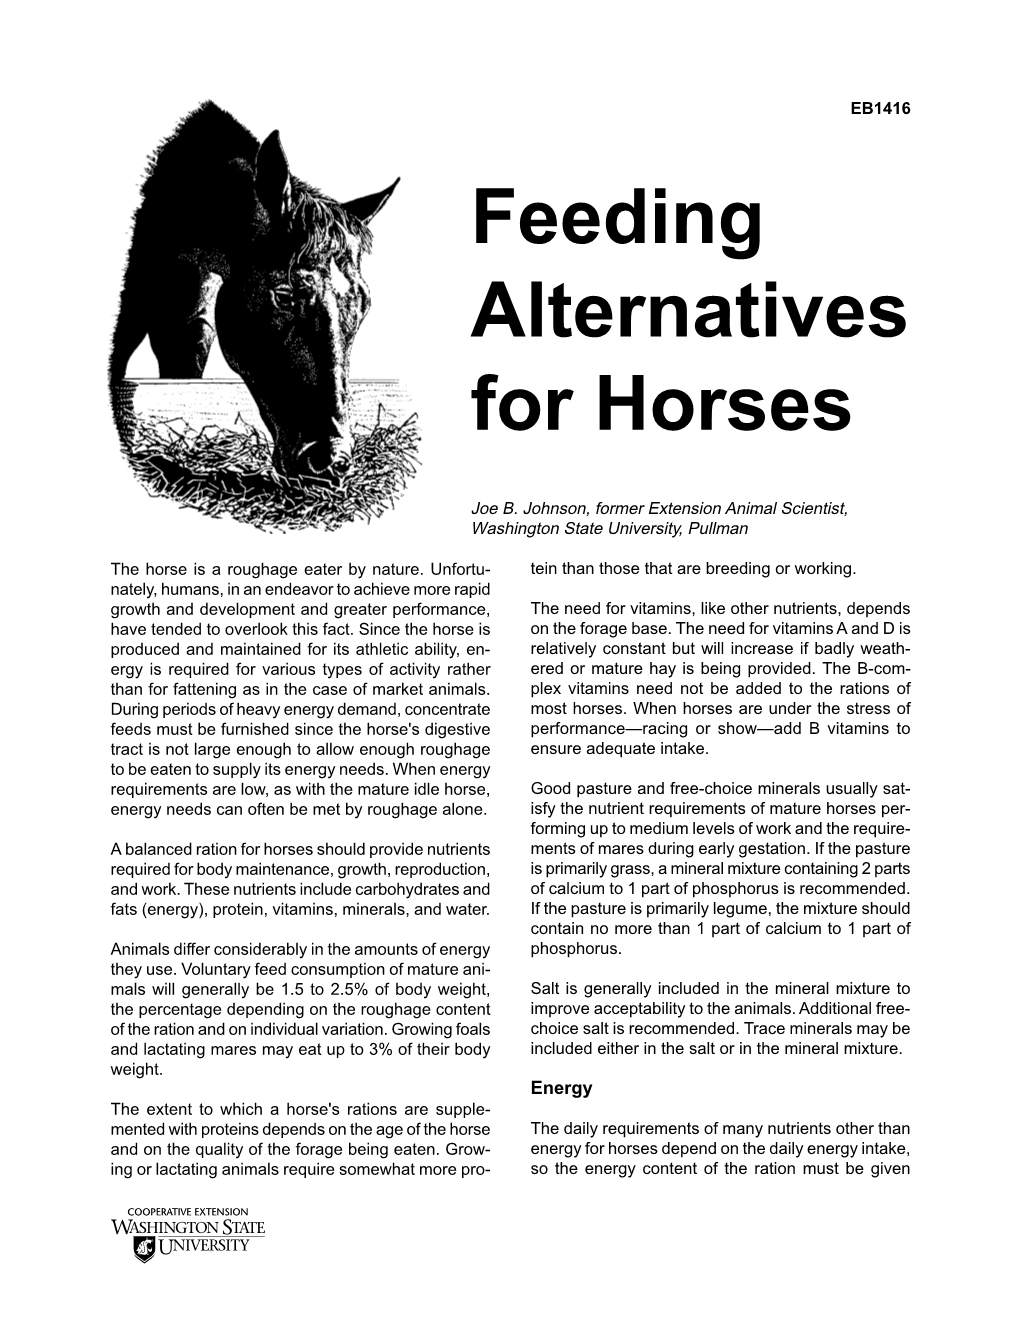 Feeding Alternatives for Horses